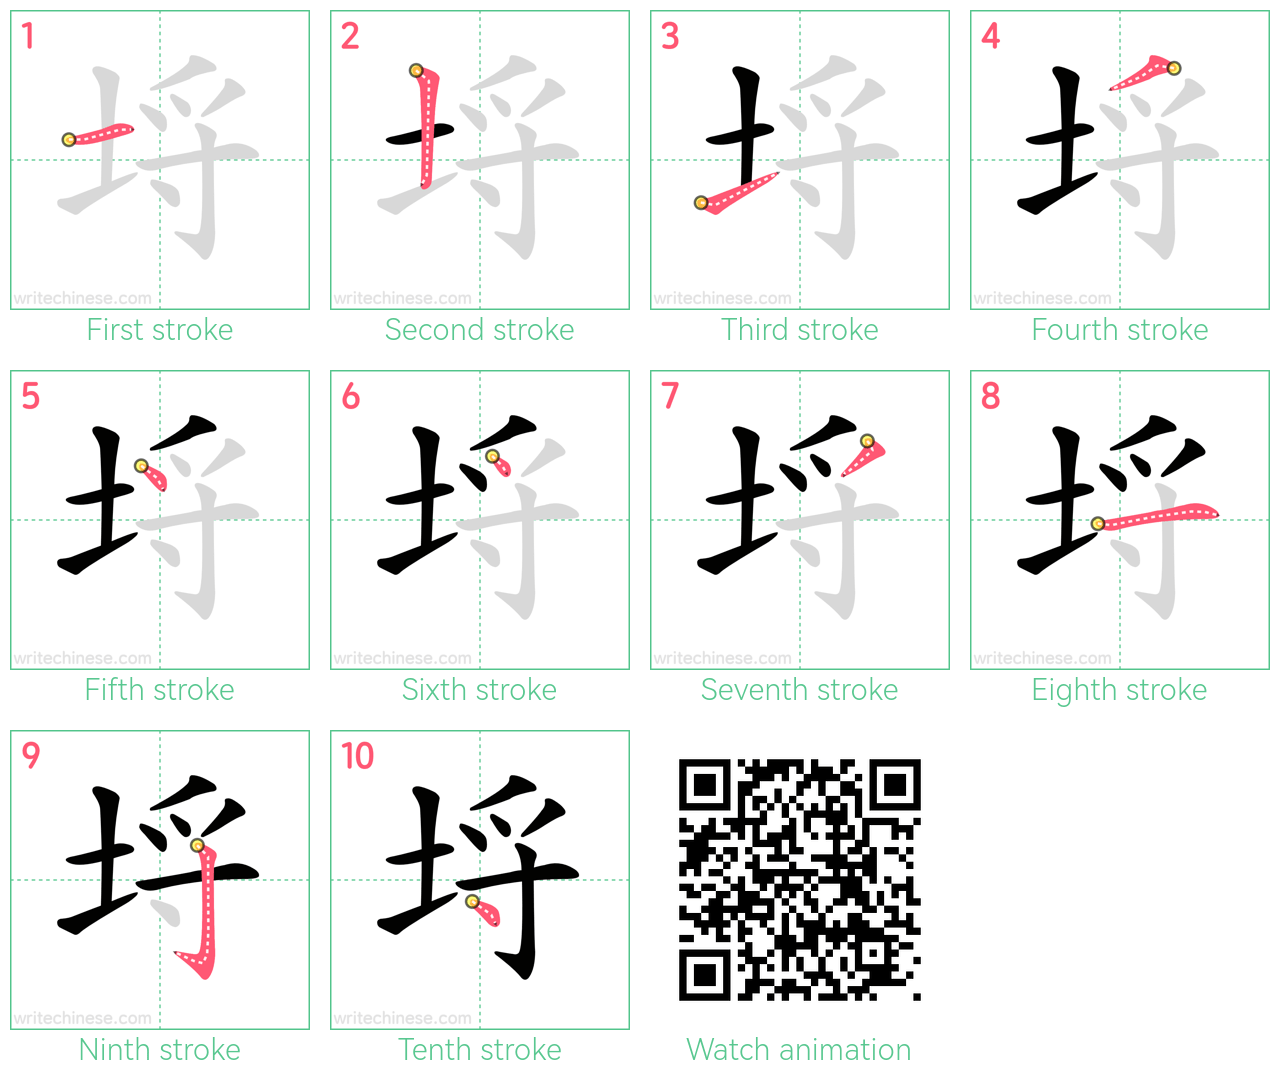 埒 step-by-step stroke order diagrams